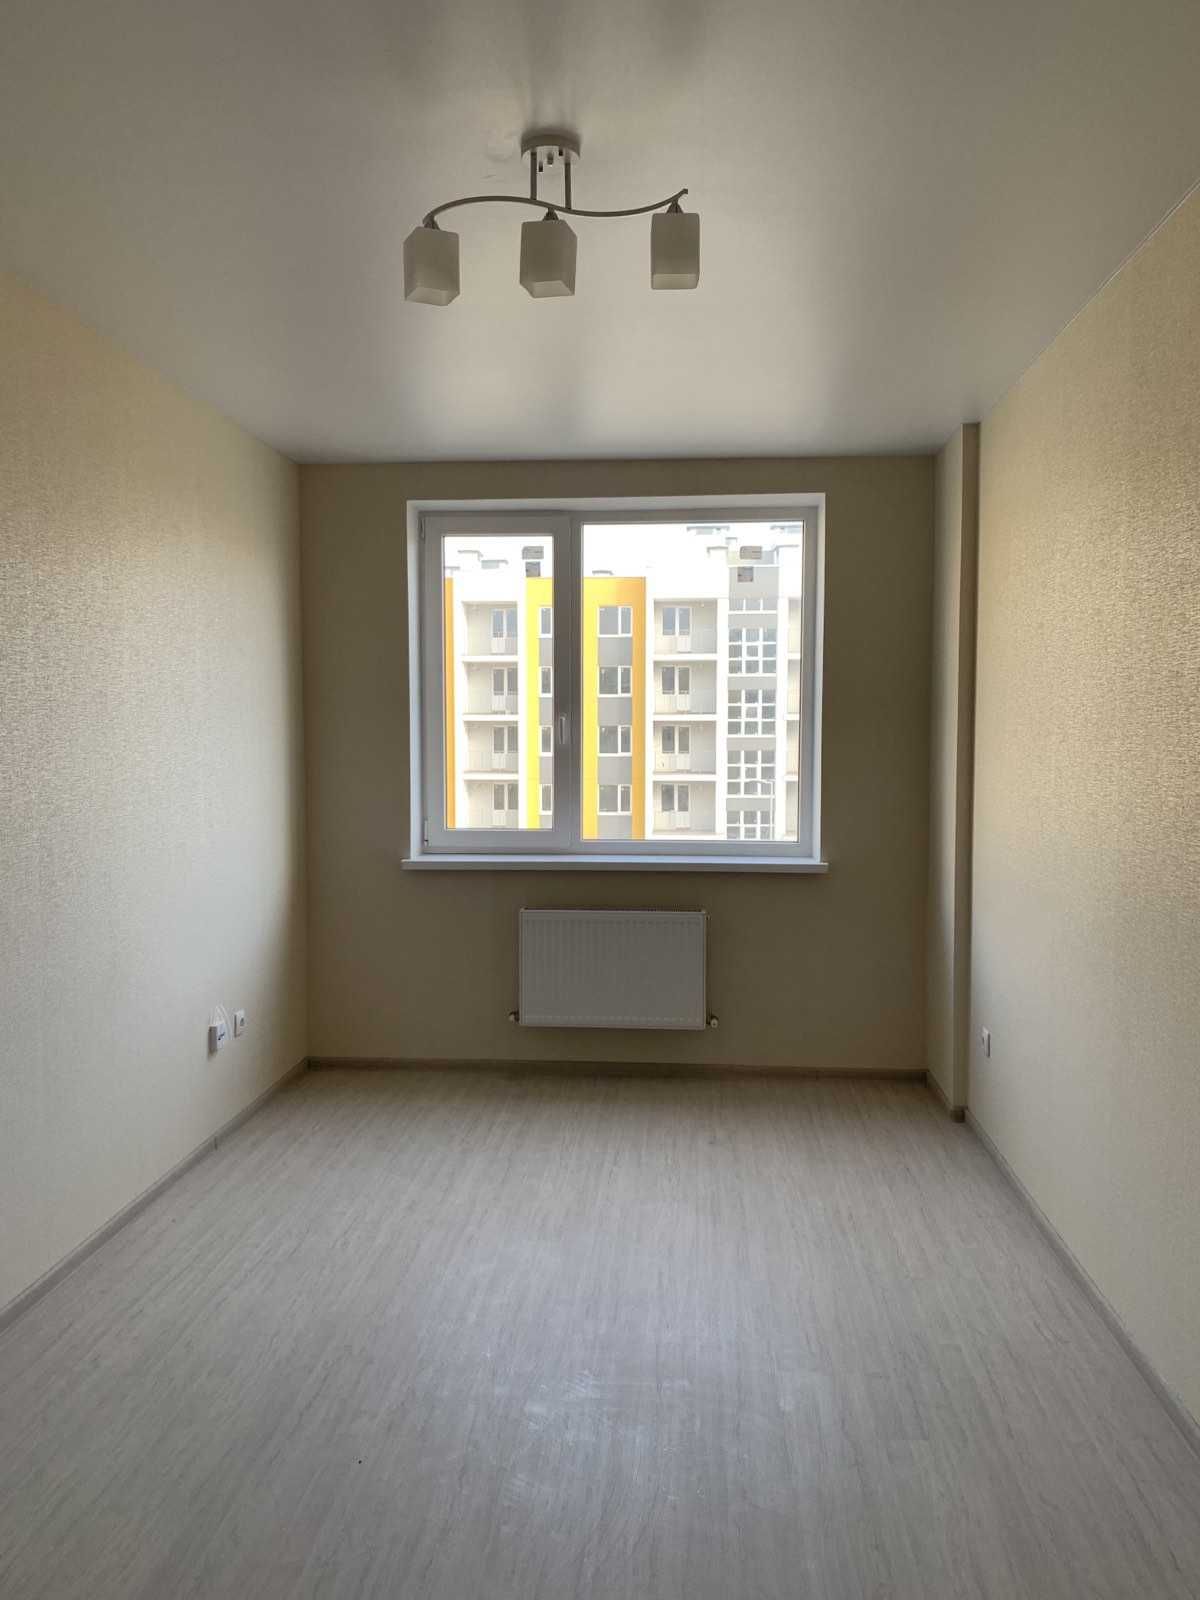 Продам новую 2 комнатную квартиру с ремонтом в ЖК  7 Небо. Дом сдан.